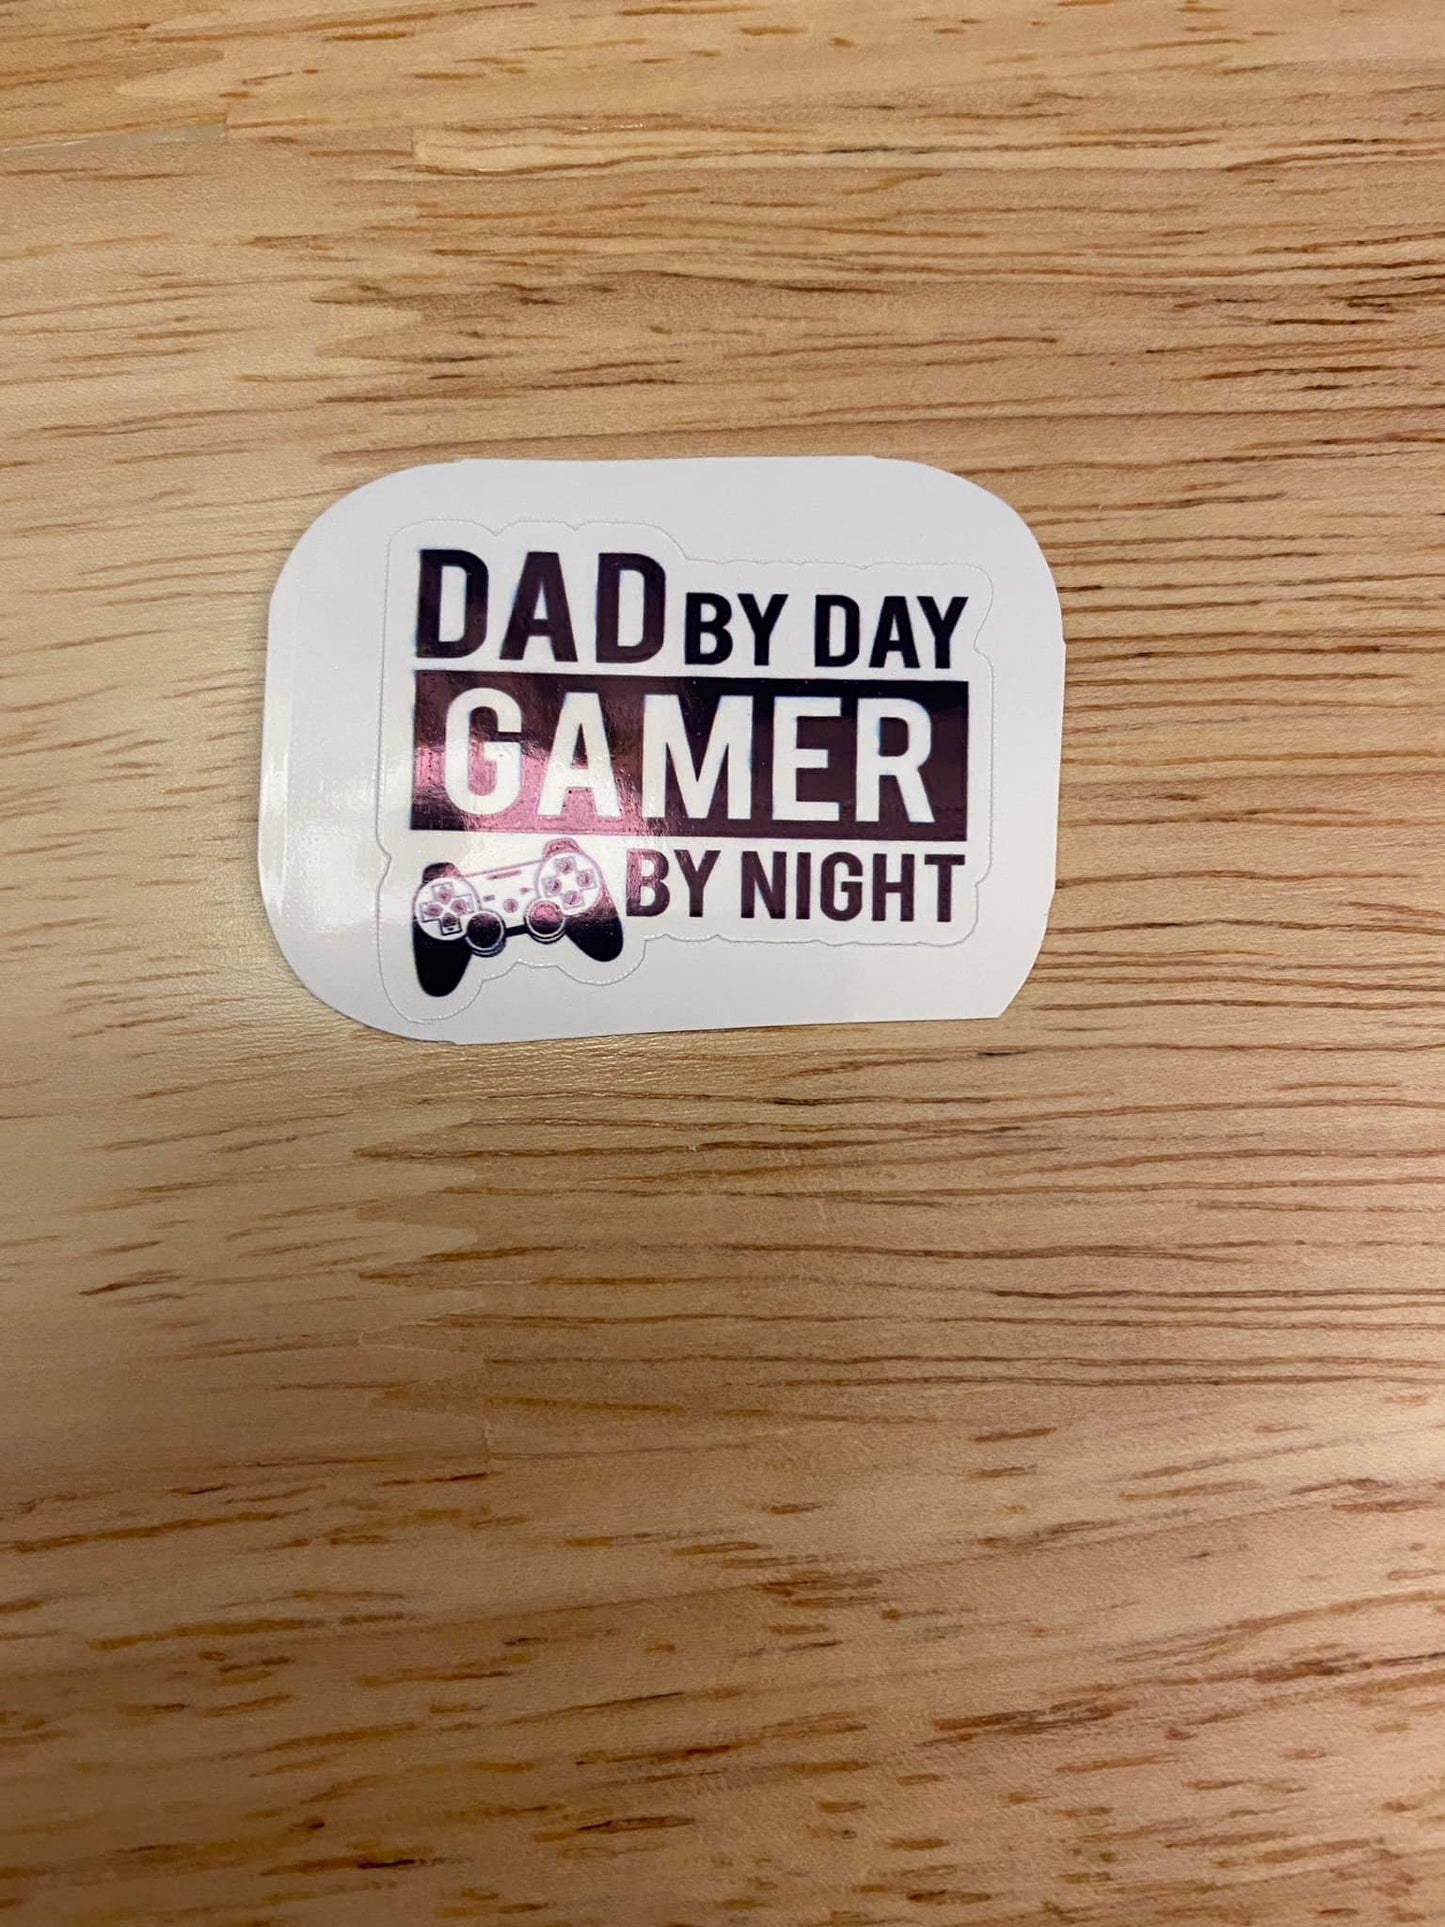 Dad by Day Gamer by Night Sticker